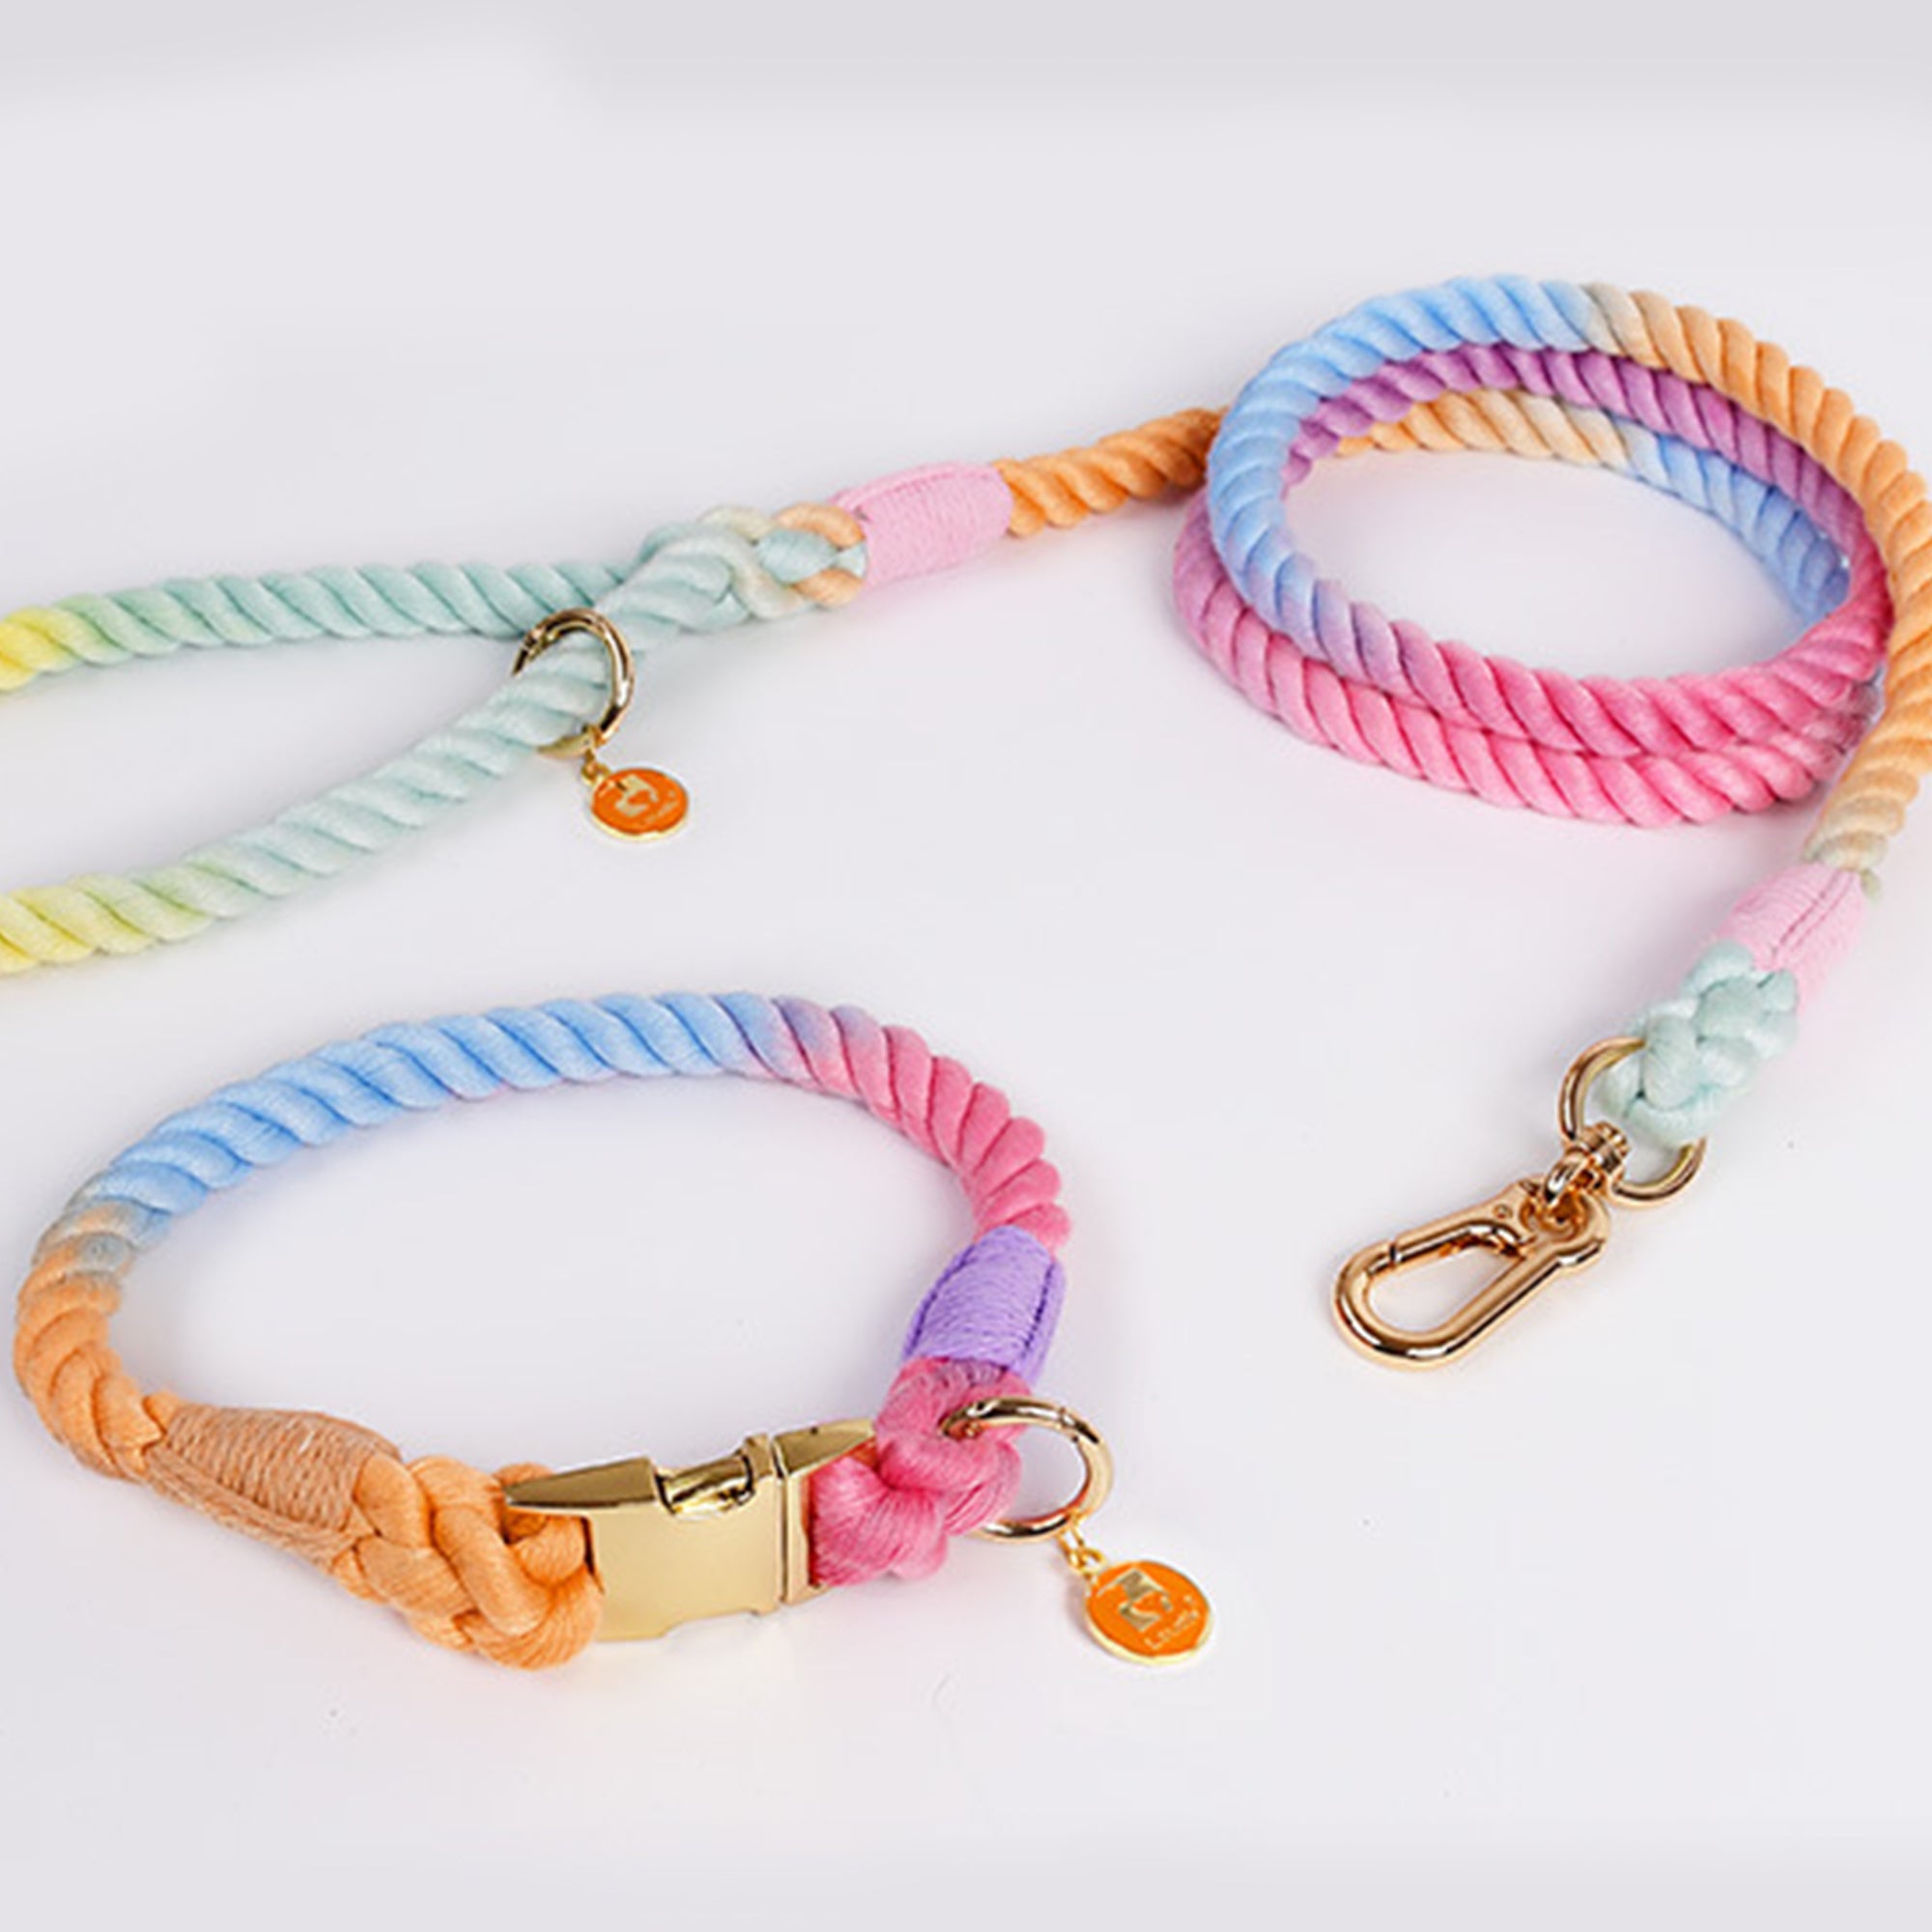 Pupwonders | Rainbow Handmade Traction Rope Walking Kit